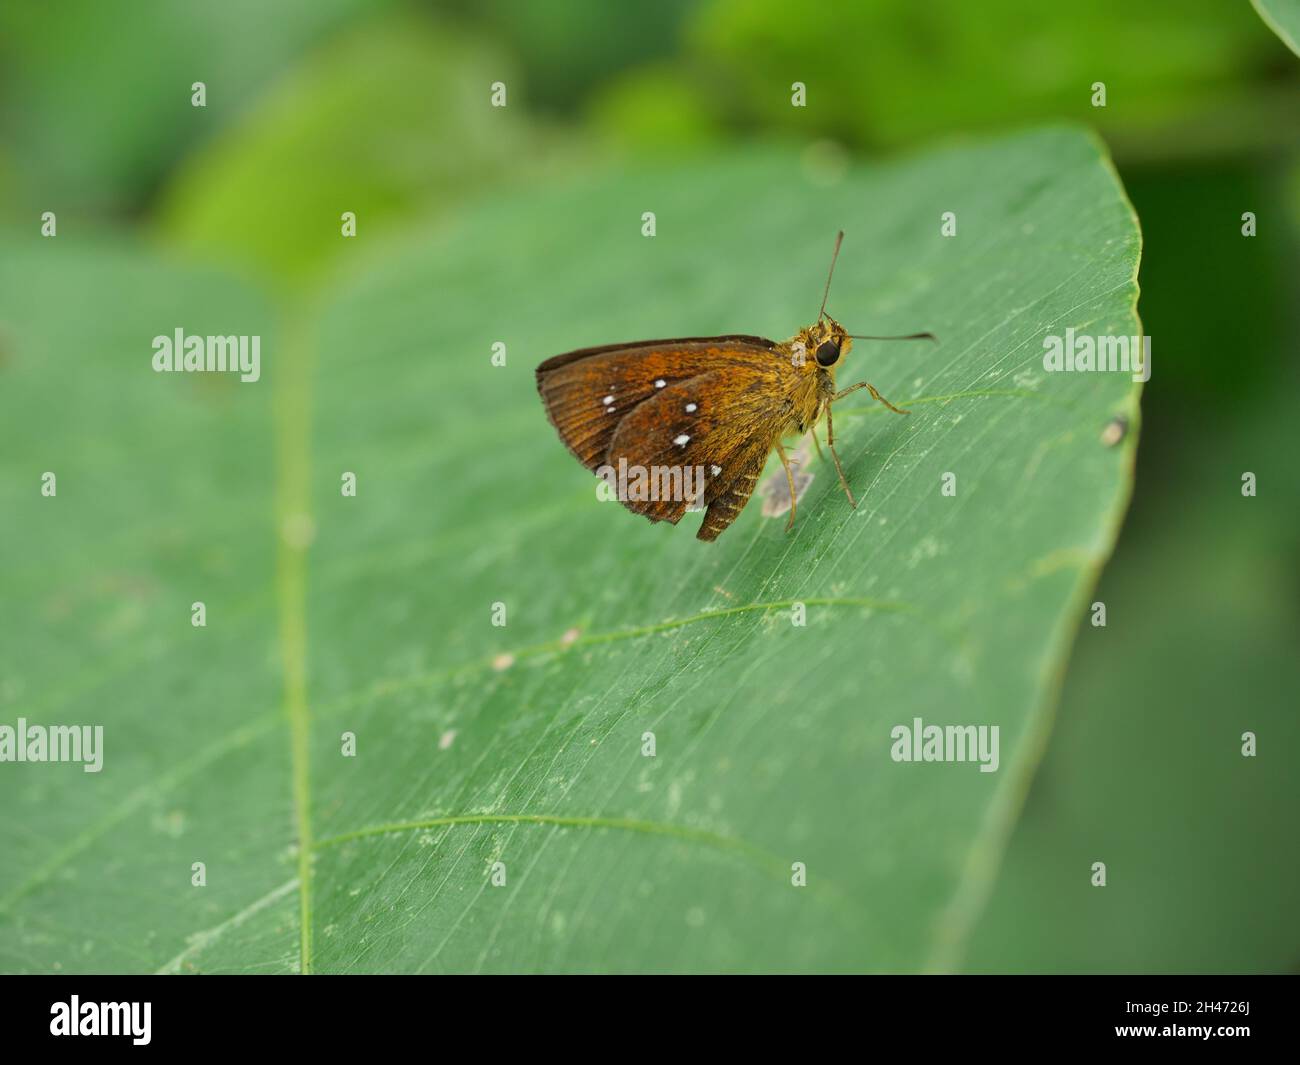 Chestnut Bob Butterfly auf Blatt mit natürlichem grünen Hintergrund, weiße Flecken auf braunem Insektenflügel Stockfoto